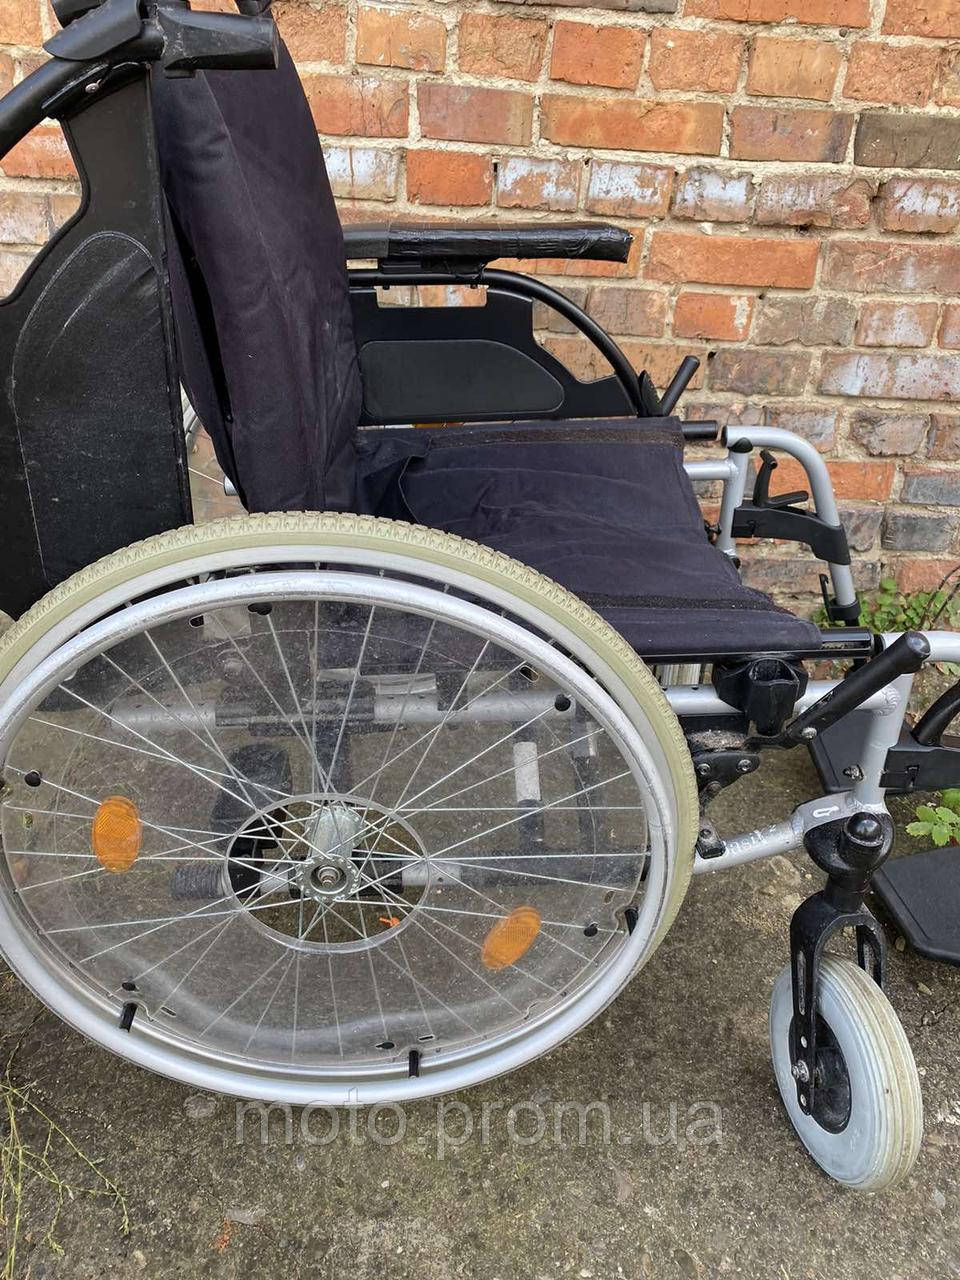 Широка інвалідна коляска Mesteca без підніжок ширина сидіння 48 см б/у без підніжок